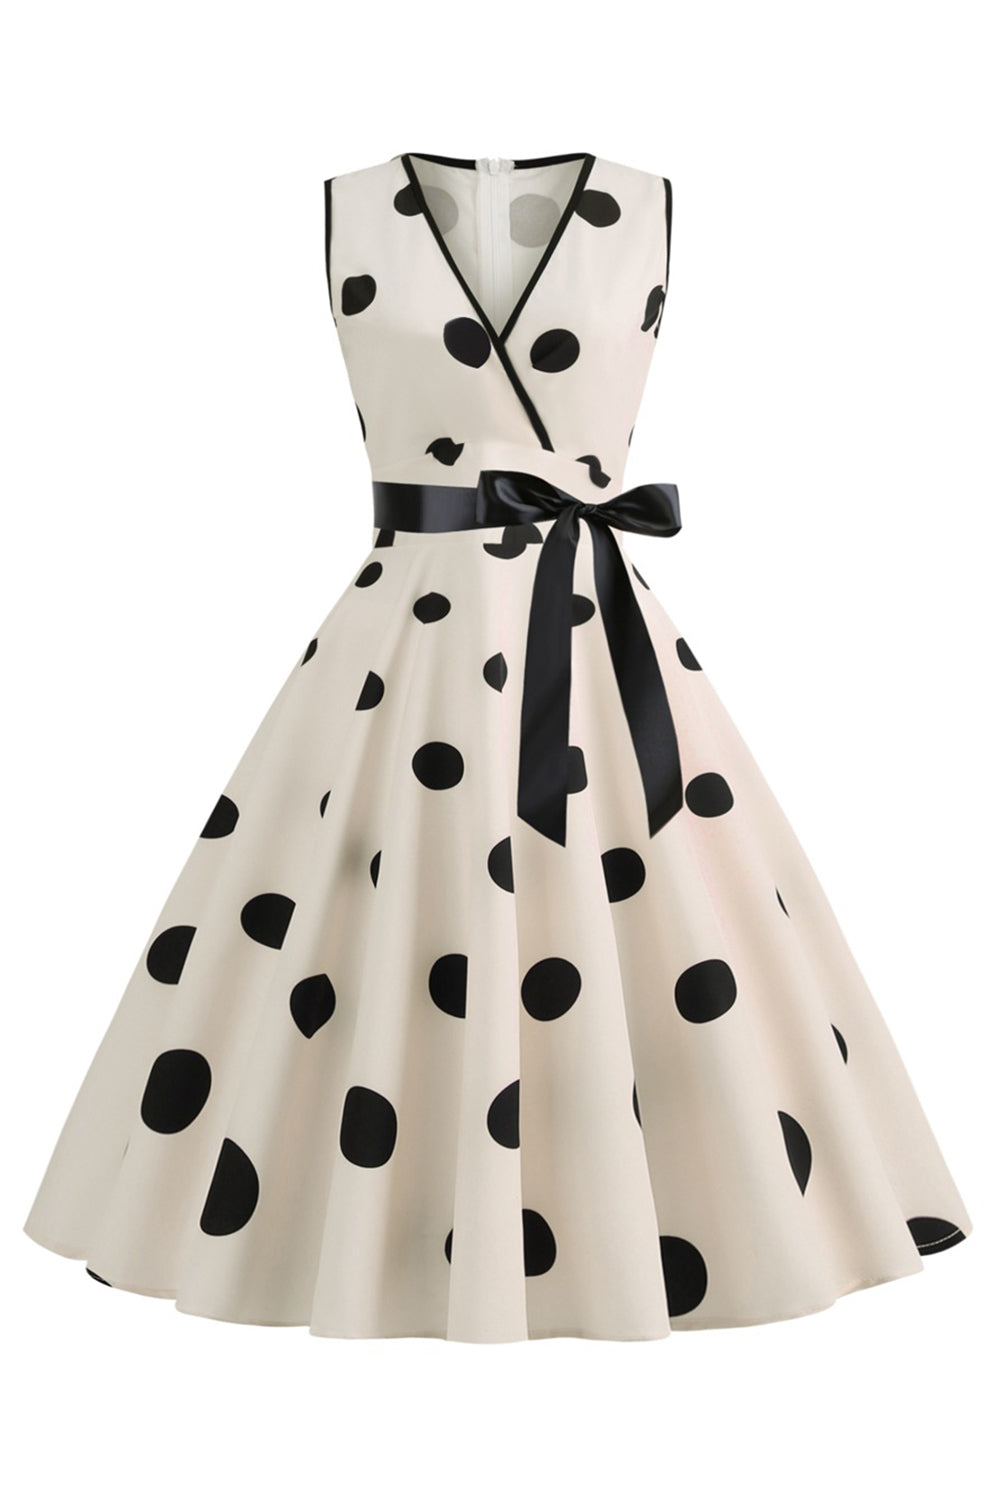 Light Blue Polka Dots Vintage 1950s Dress